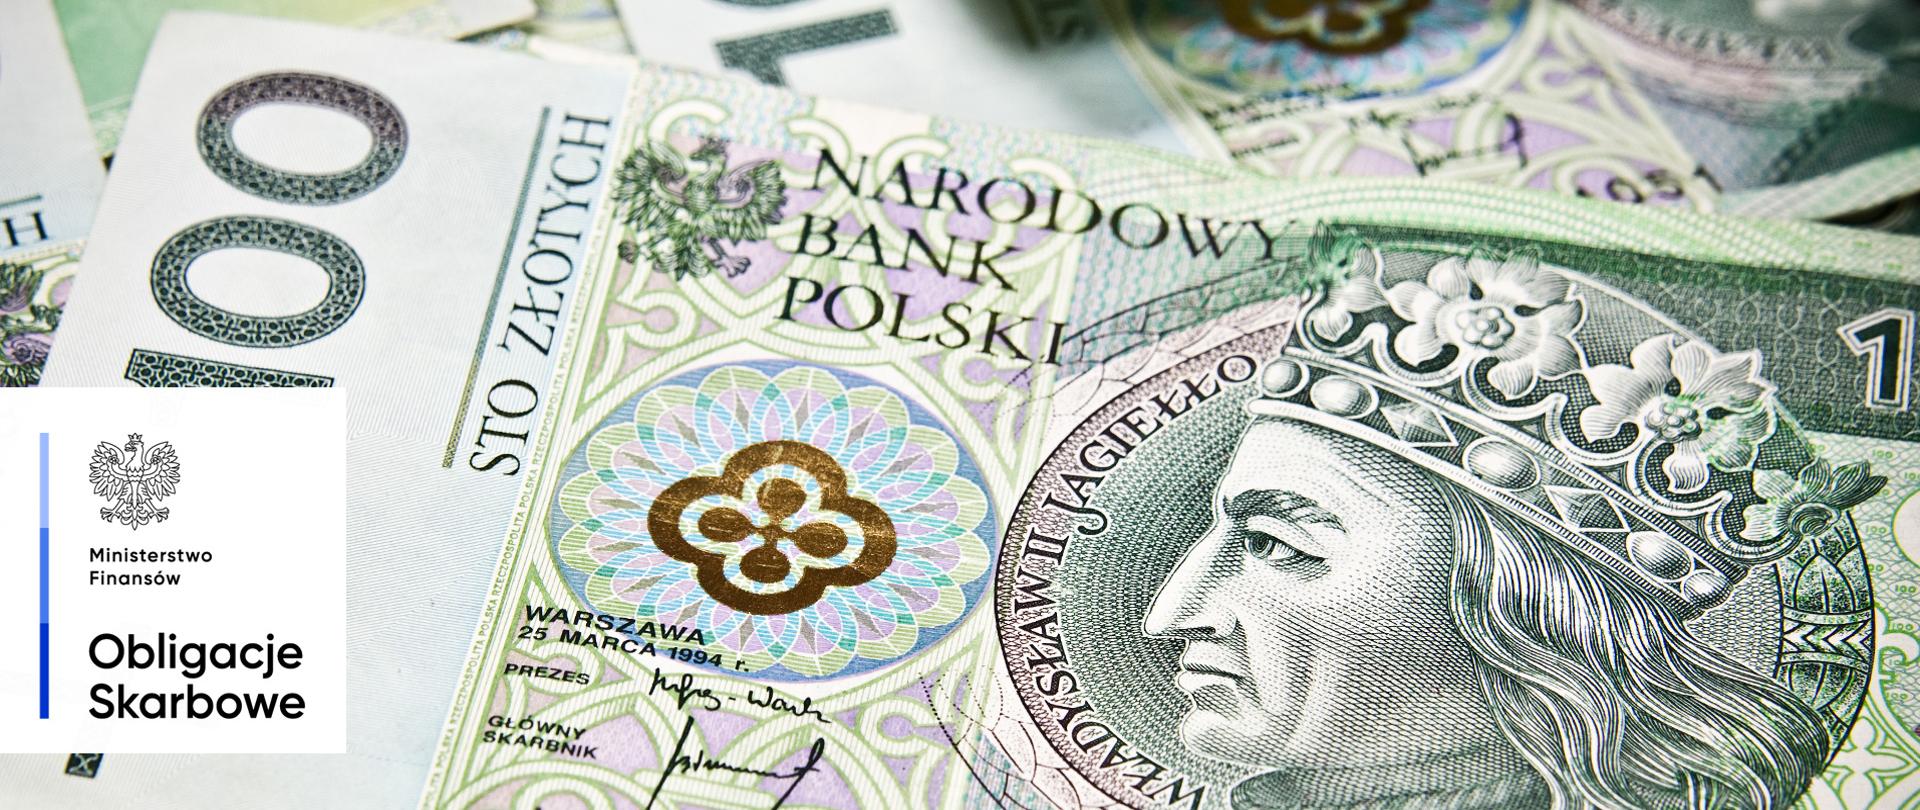 Banknot o nominale 100 złotych. Ministerstwo Finansów, Obligacje Skarbowe.